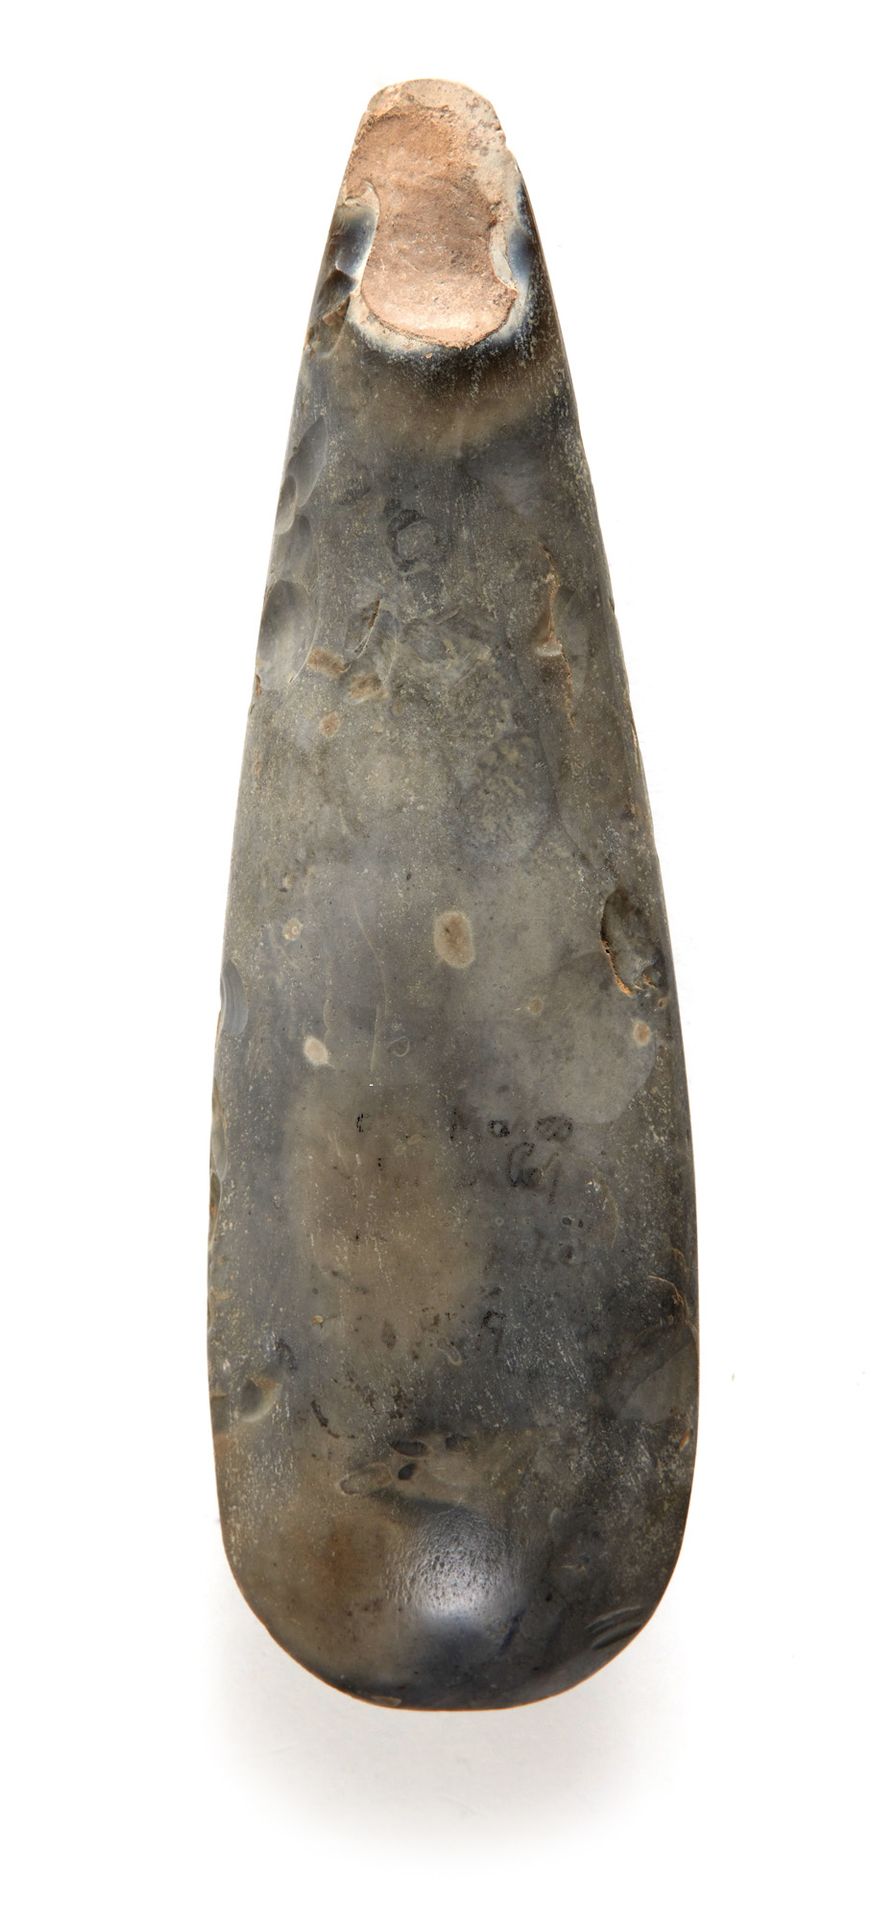 HACHE 斧头

抛光，边缘平整

灰色火石

法国，诺曼底，新石器时代晚期。铭文显示 "Sotteville"。

长：21厘米。